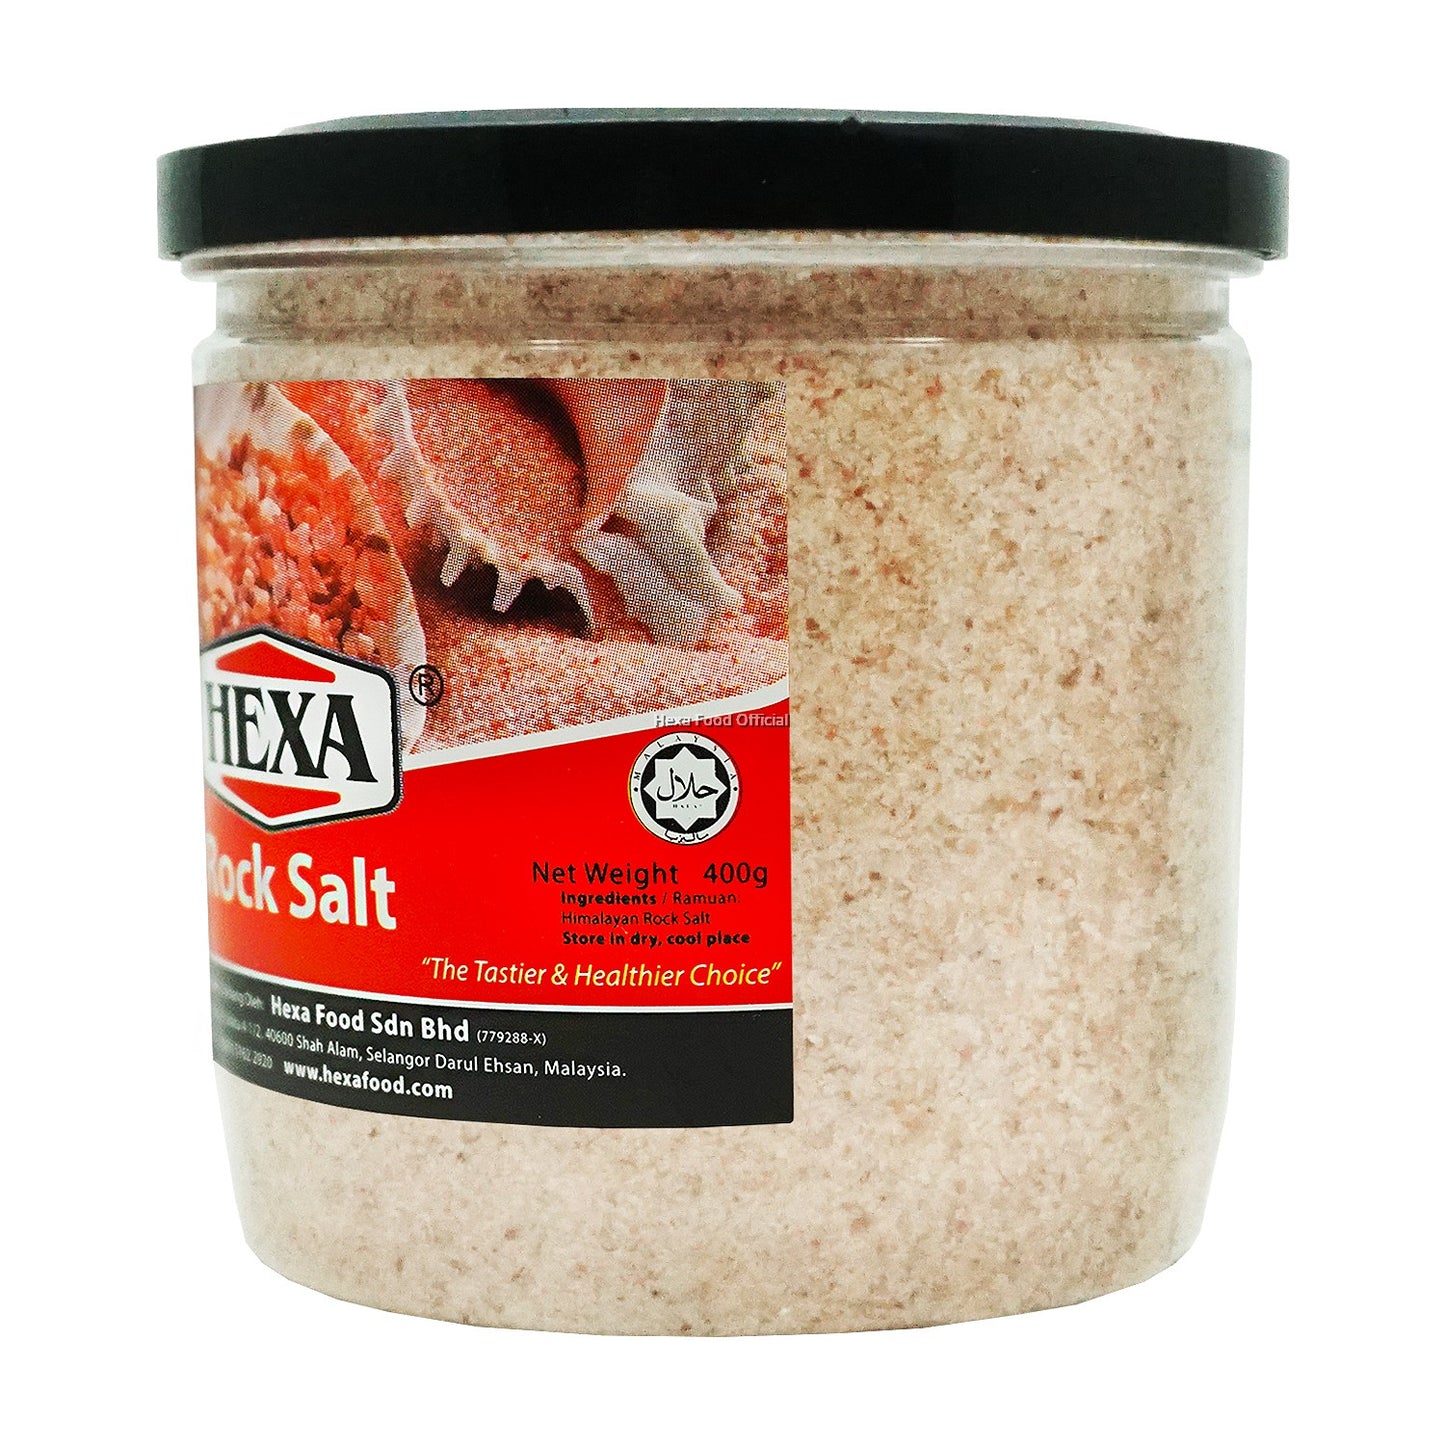 HEXA HALAL Rock Salt 400gm